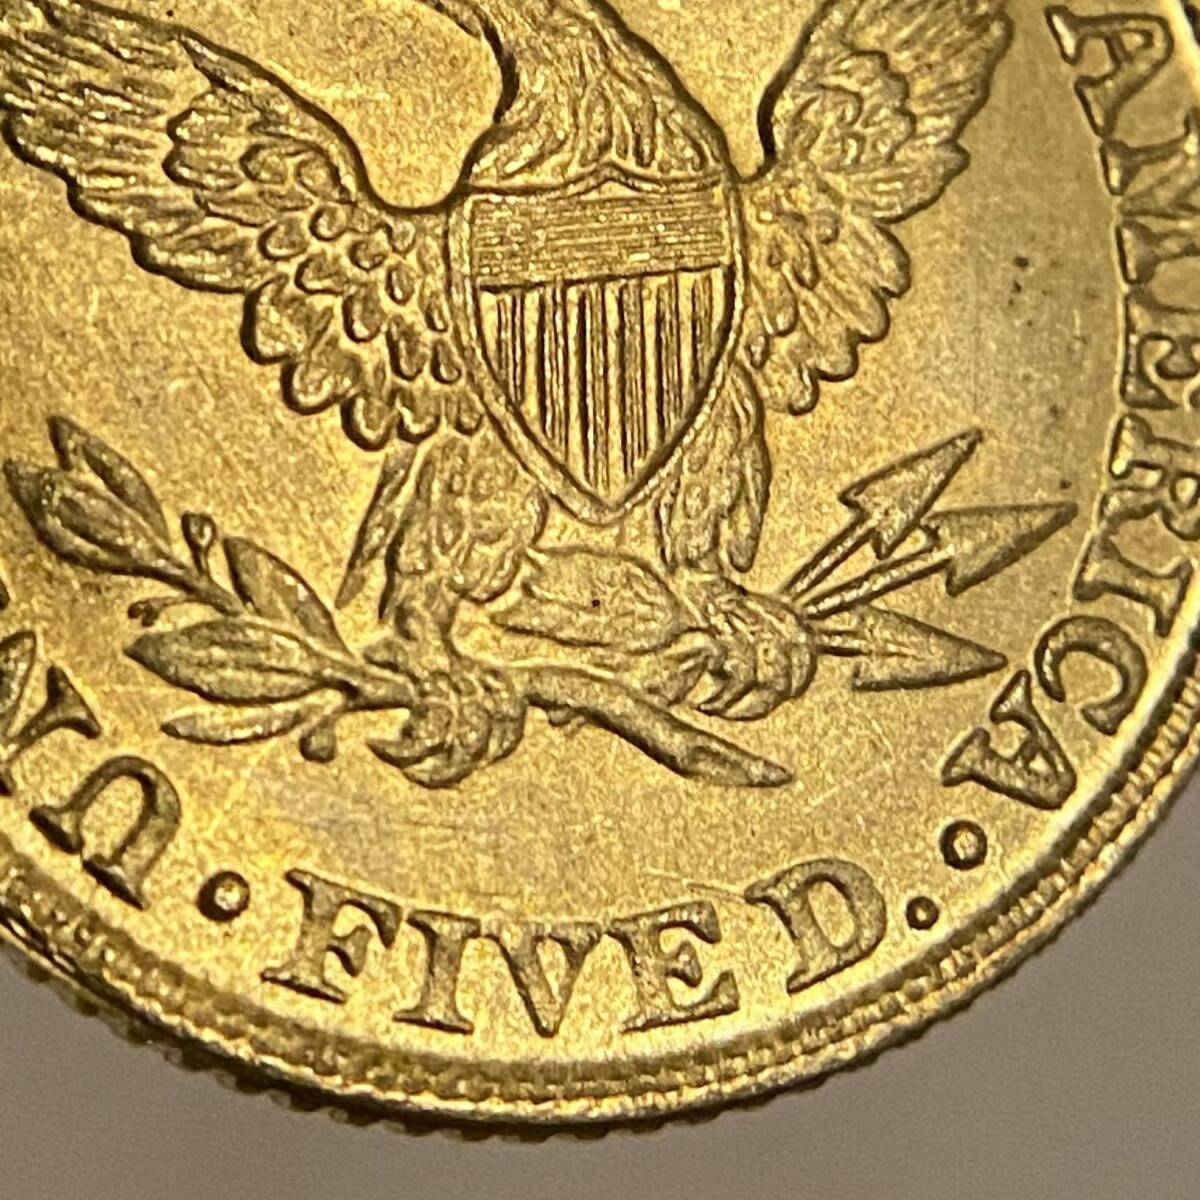 イーグル金貨 自由の女神 アメリカ古銭 約4.08g 1900年 一円貨幣 硬貨骨董品コインコレクションの画像6